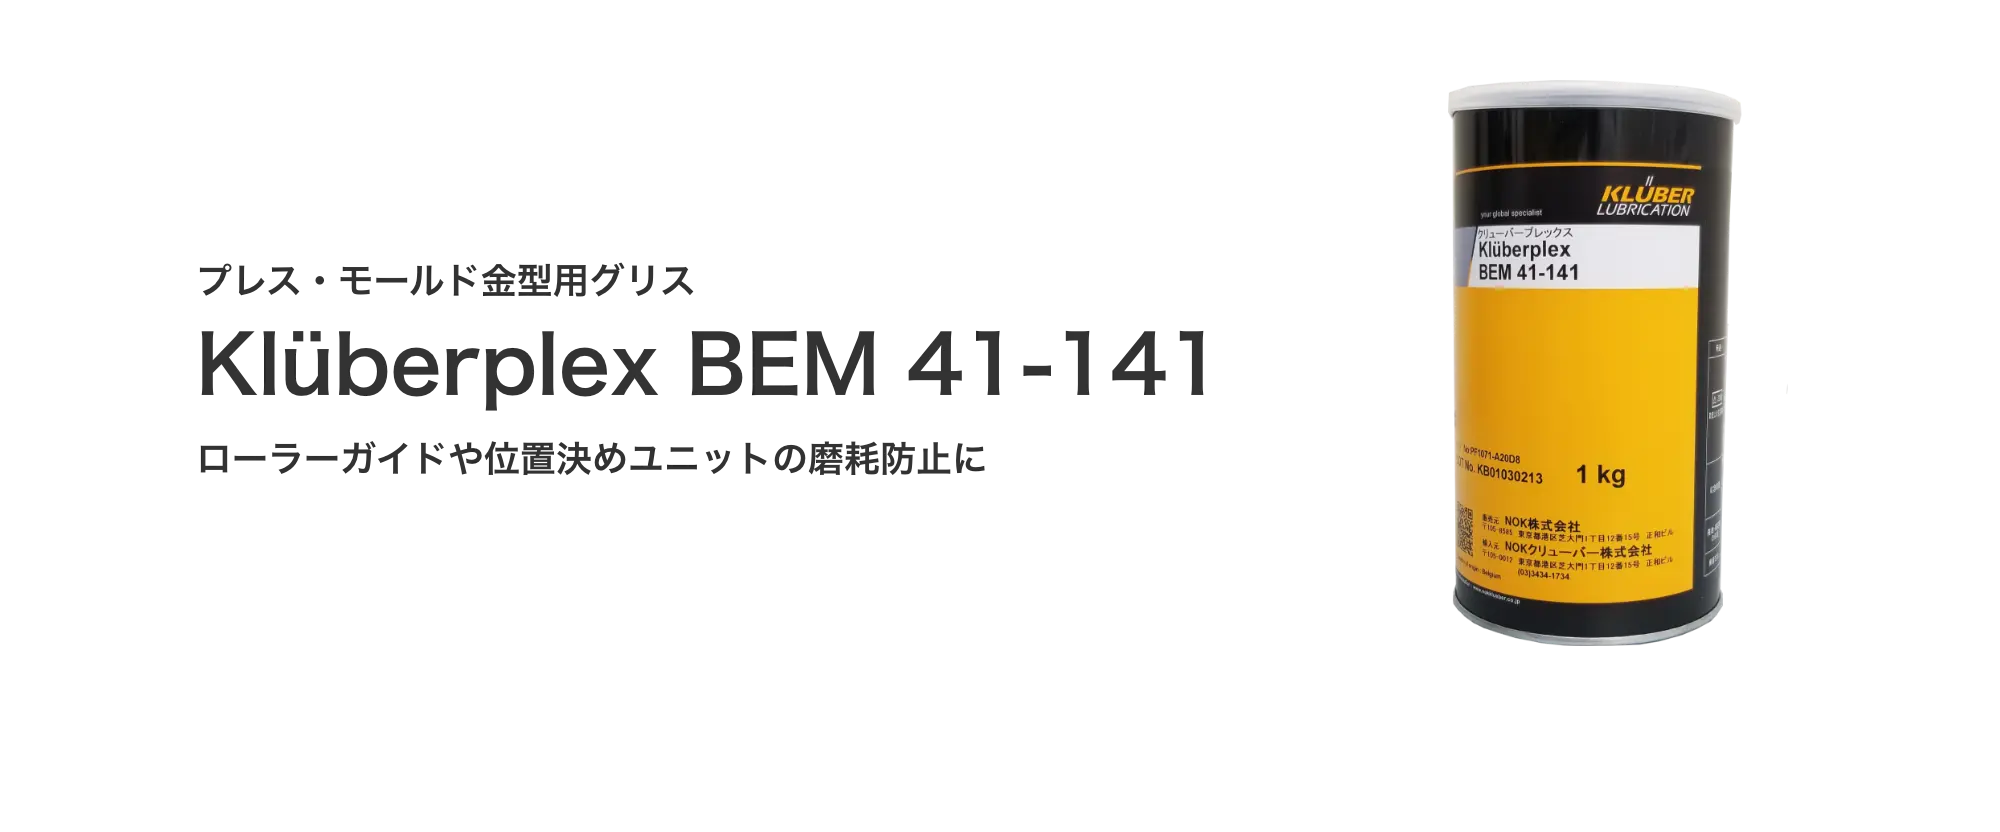 プレス・モールド金型用グリス「Kluberplex BEM 41-141」